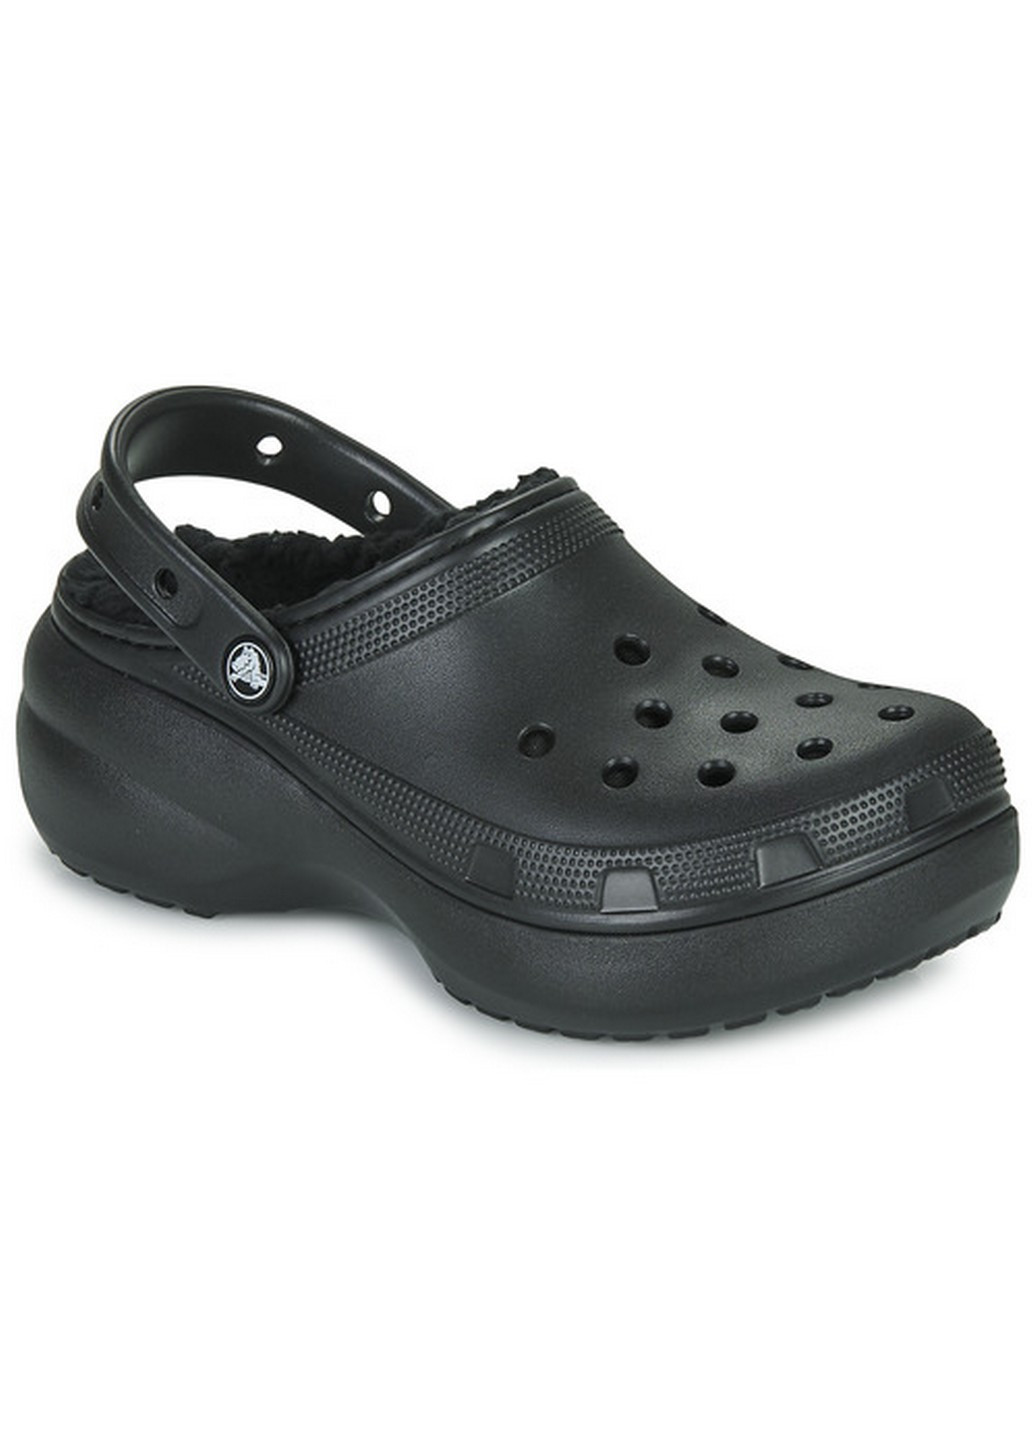 Черные кроксы Crocs на платформе